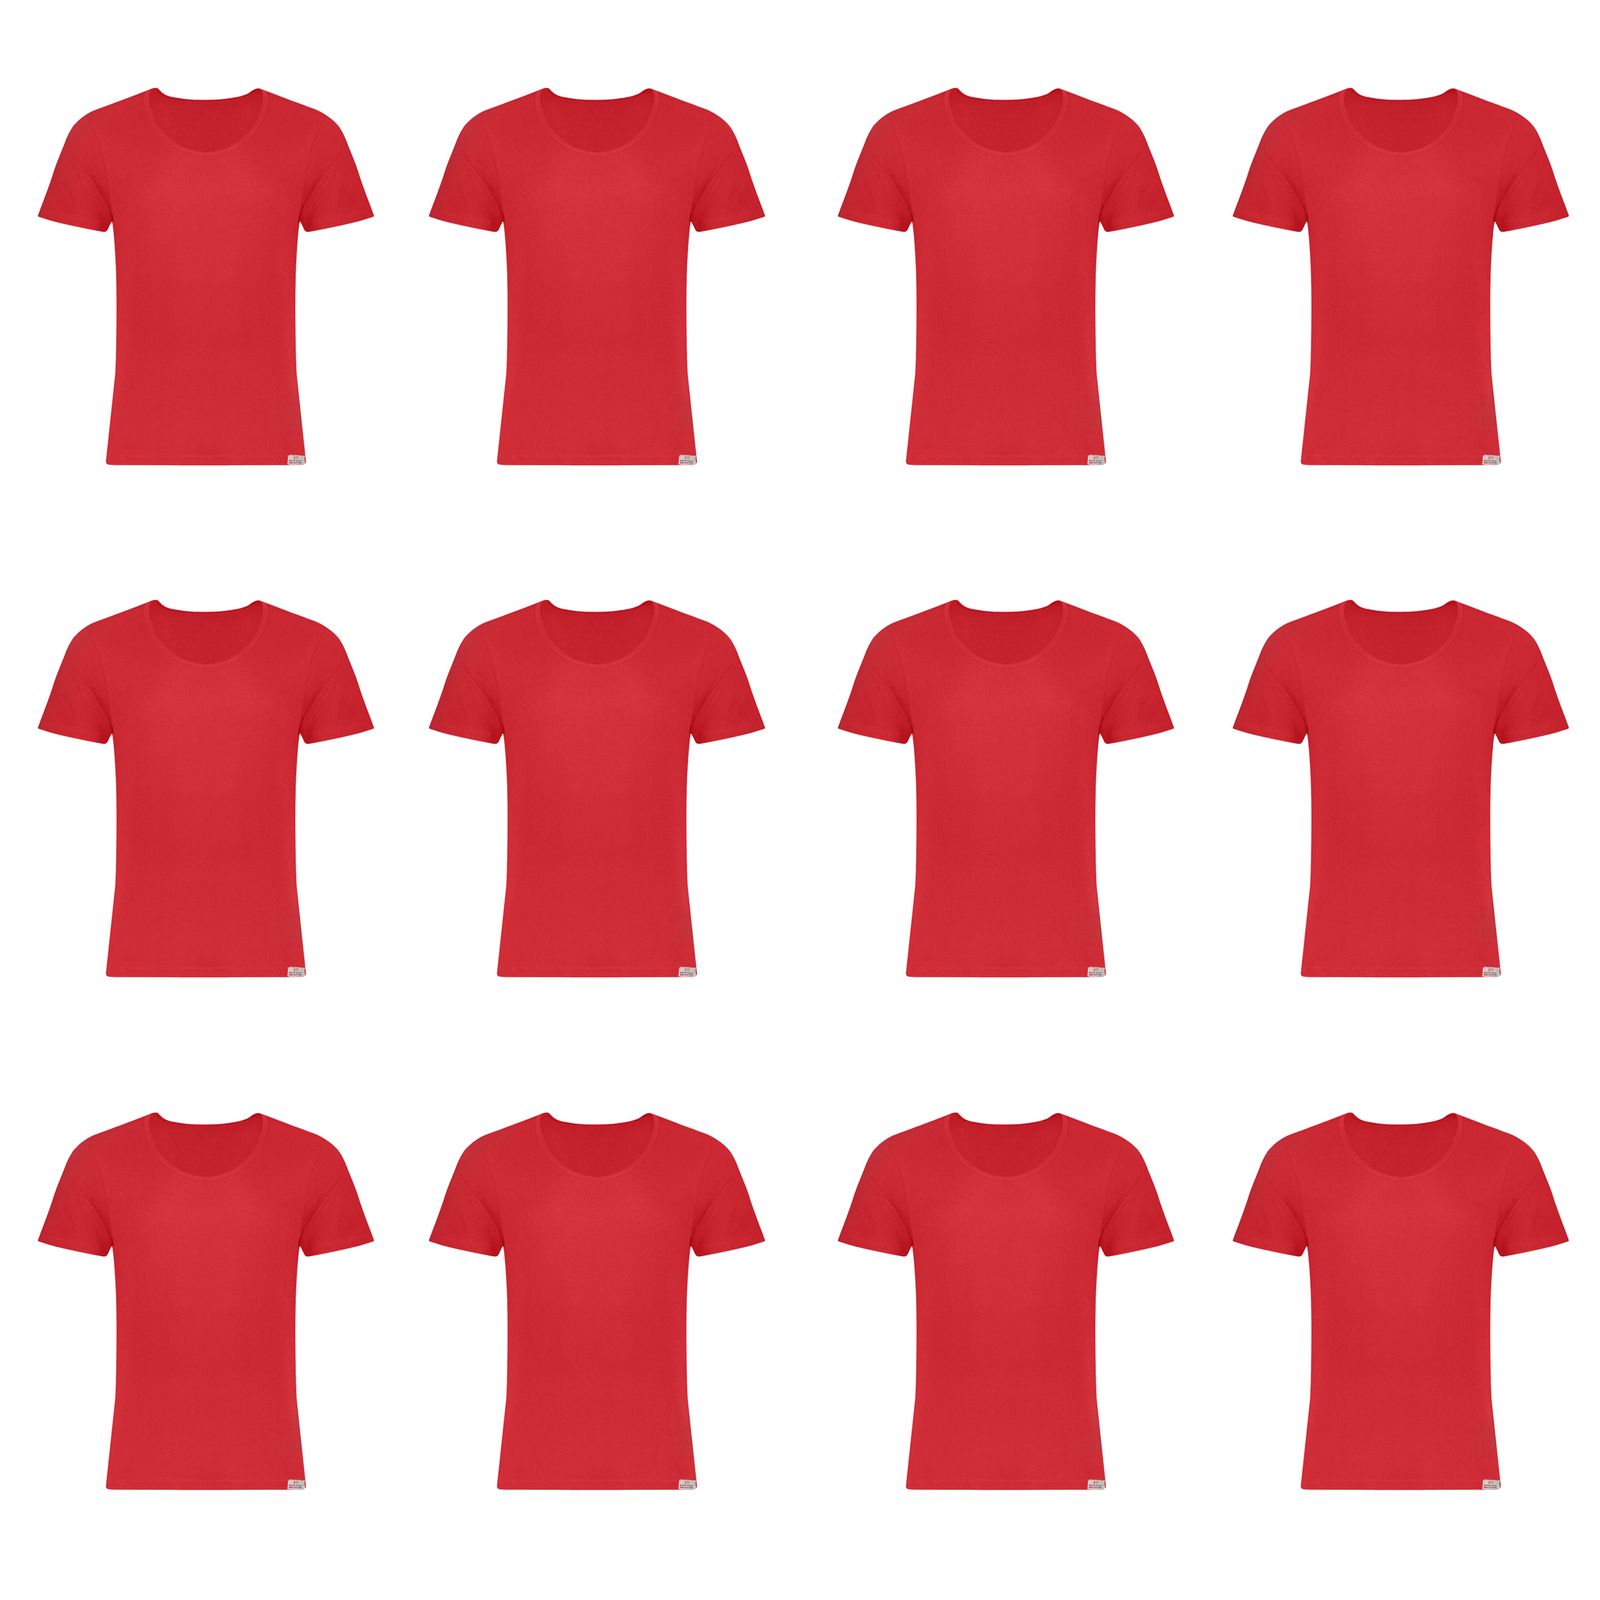 زیرپوش آستین دار مردانه برهان تن پوش مدل 2-02  رنگ قرمز بسته 12 عددی -  - 1